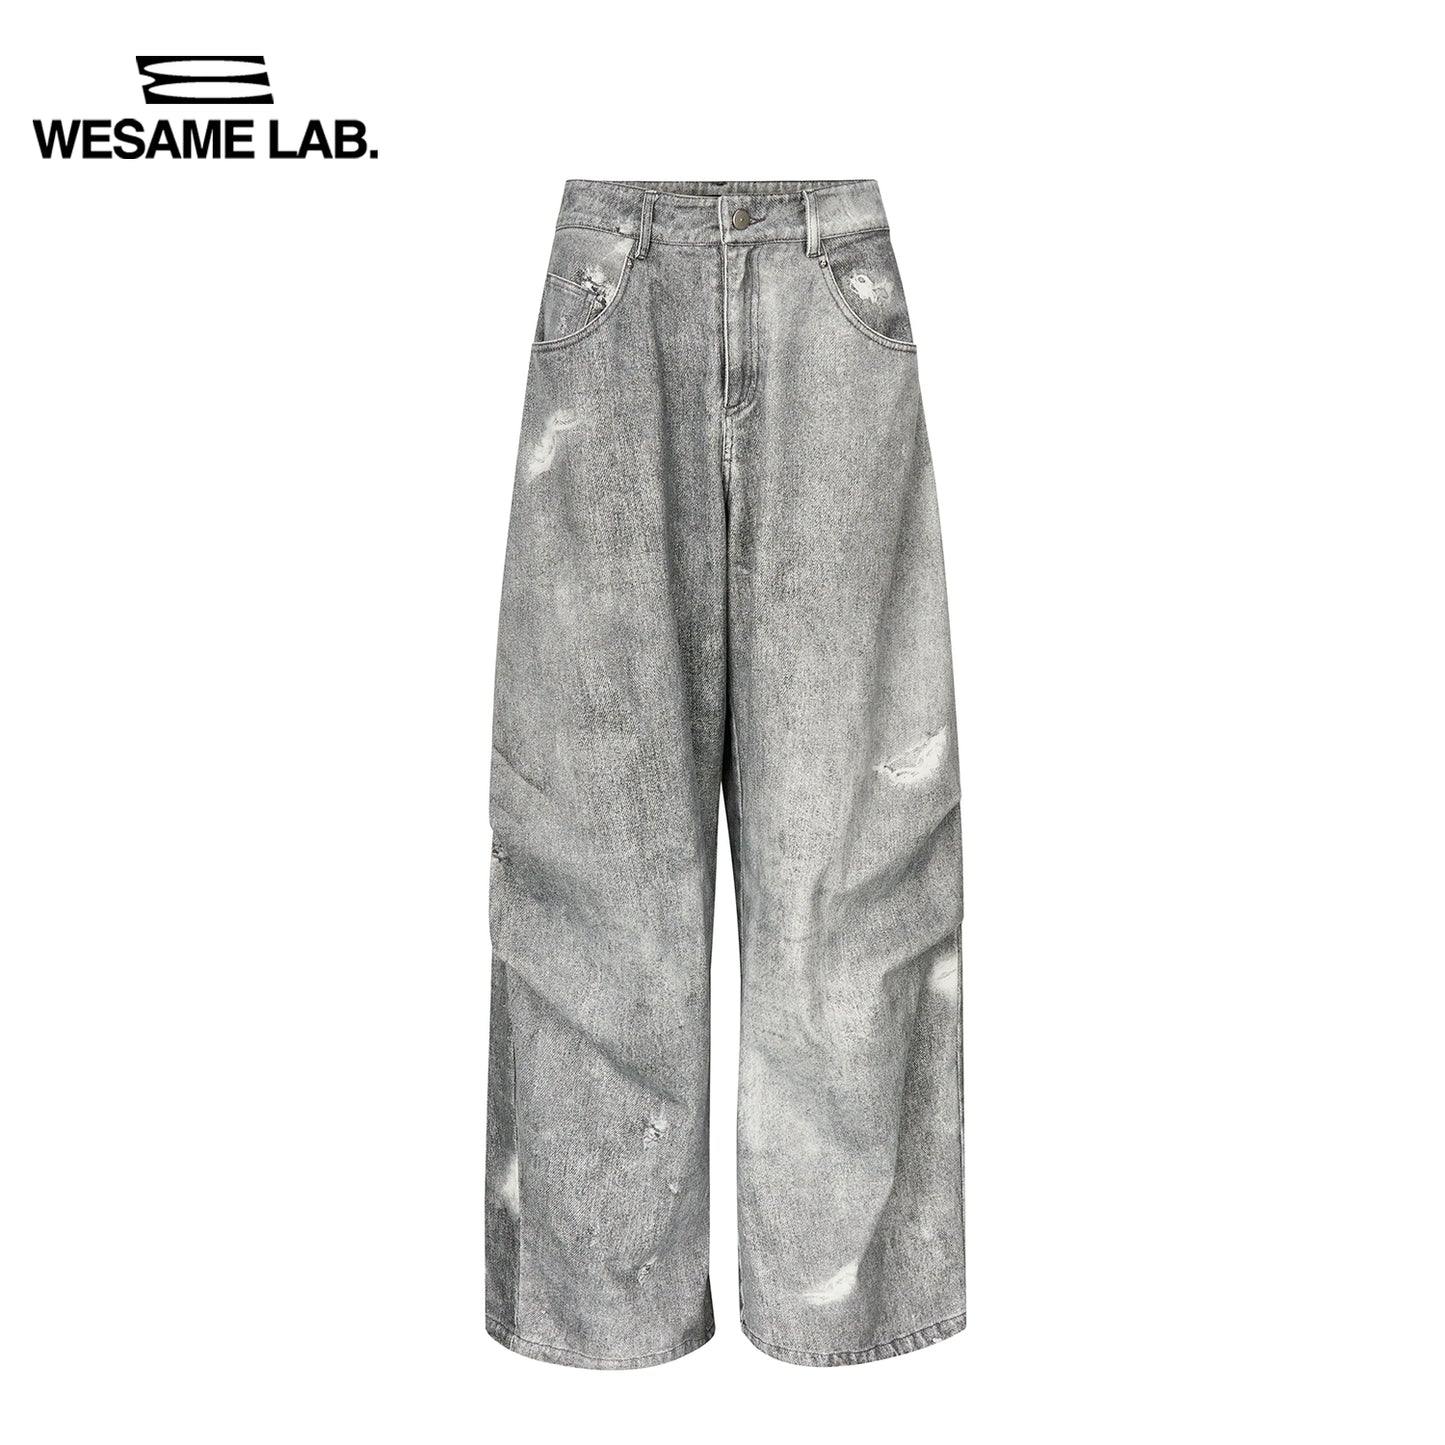 Peut être porté pendant toutes les saisons, montrant une impression lavée mincerante avec des trous et un pantalon large en denim gris texturé pour les femmes